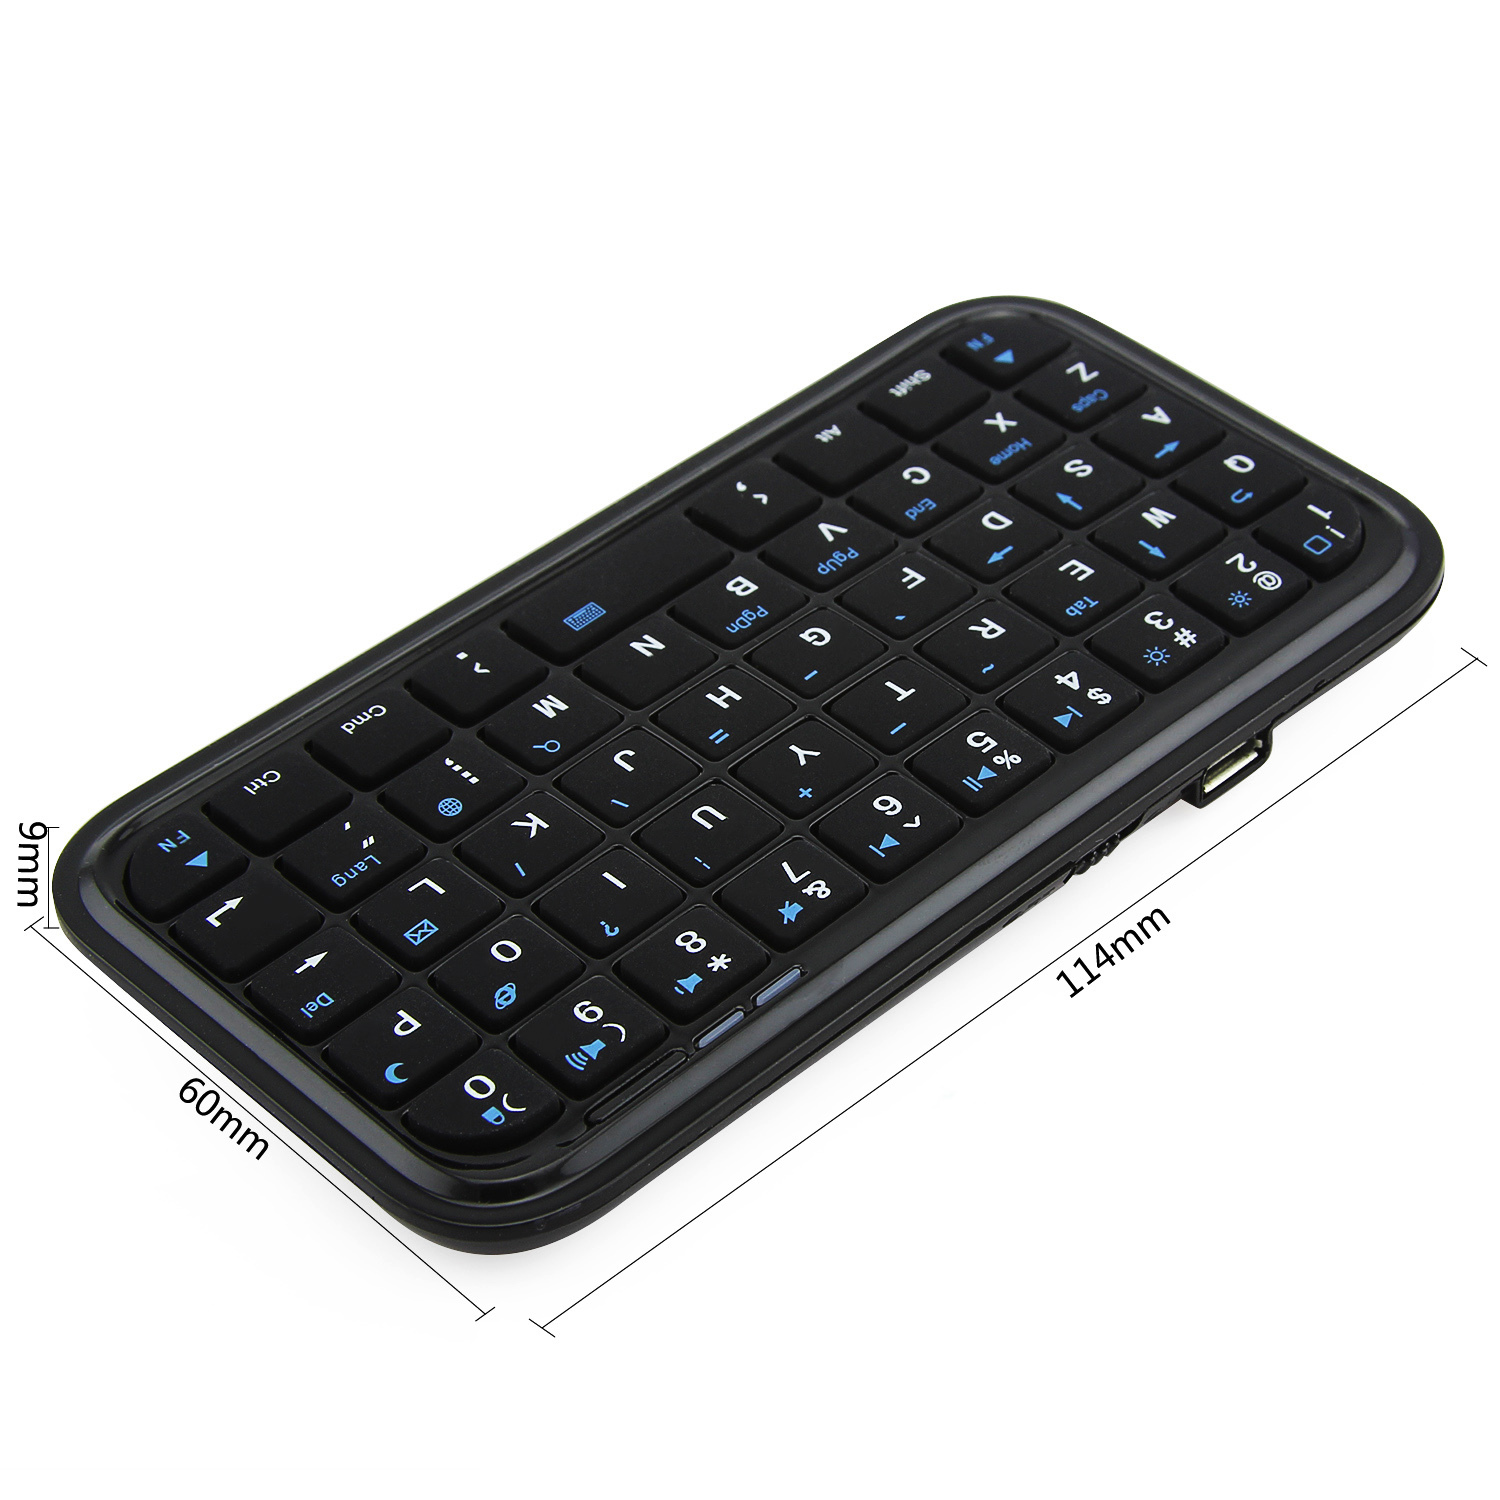 Miniteclado-inalámbrico-Bluetooth-delgado-negro-para-ordenador-teclado-de-mano-pequeño-portátil-para-iPhone-Android-teléfono inteligente (2)